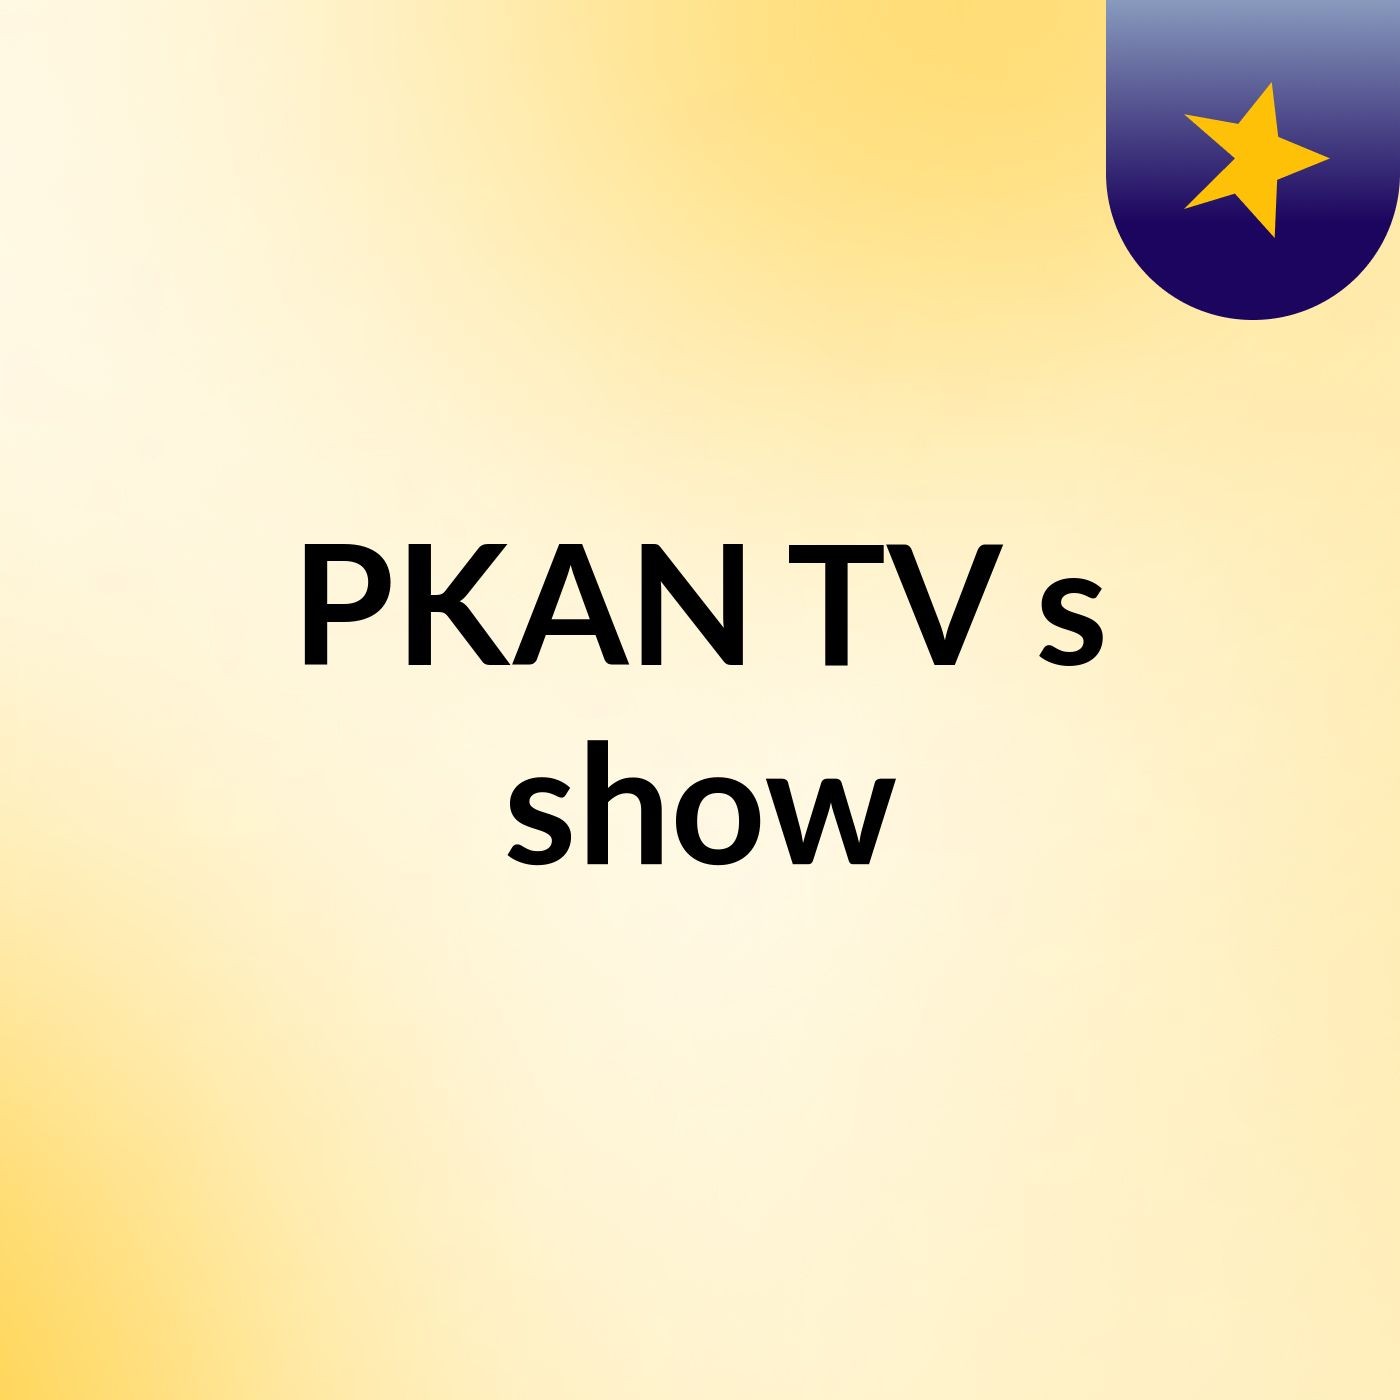 PKAN TV's show